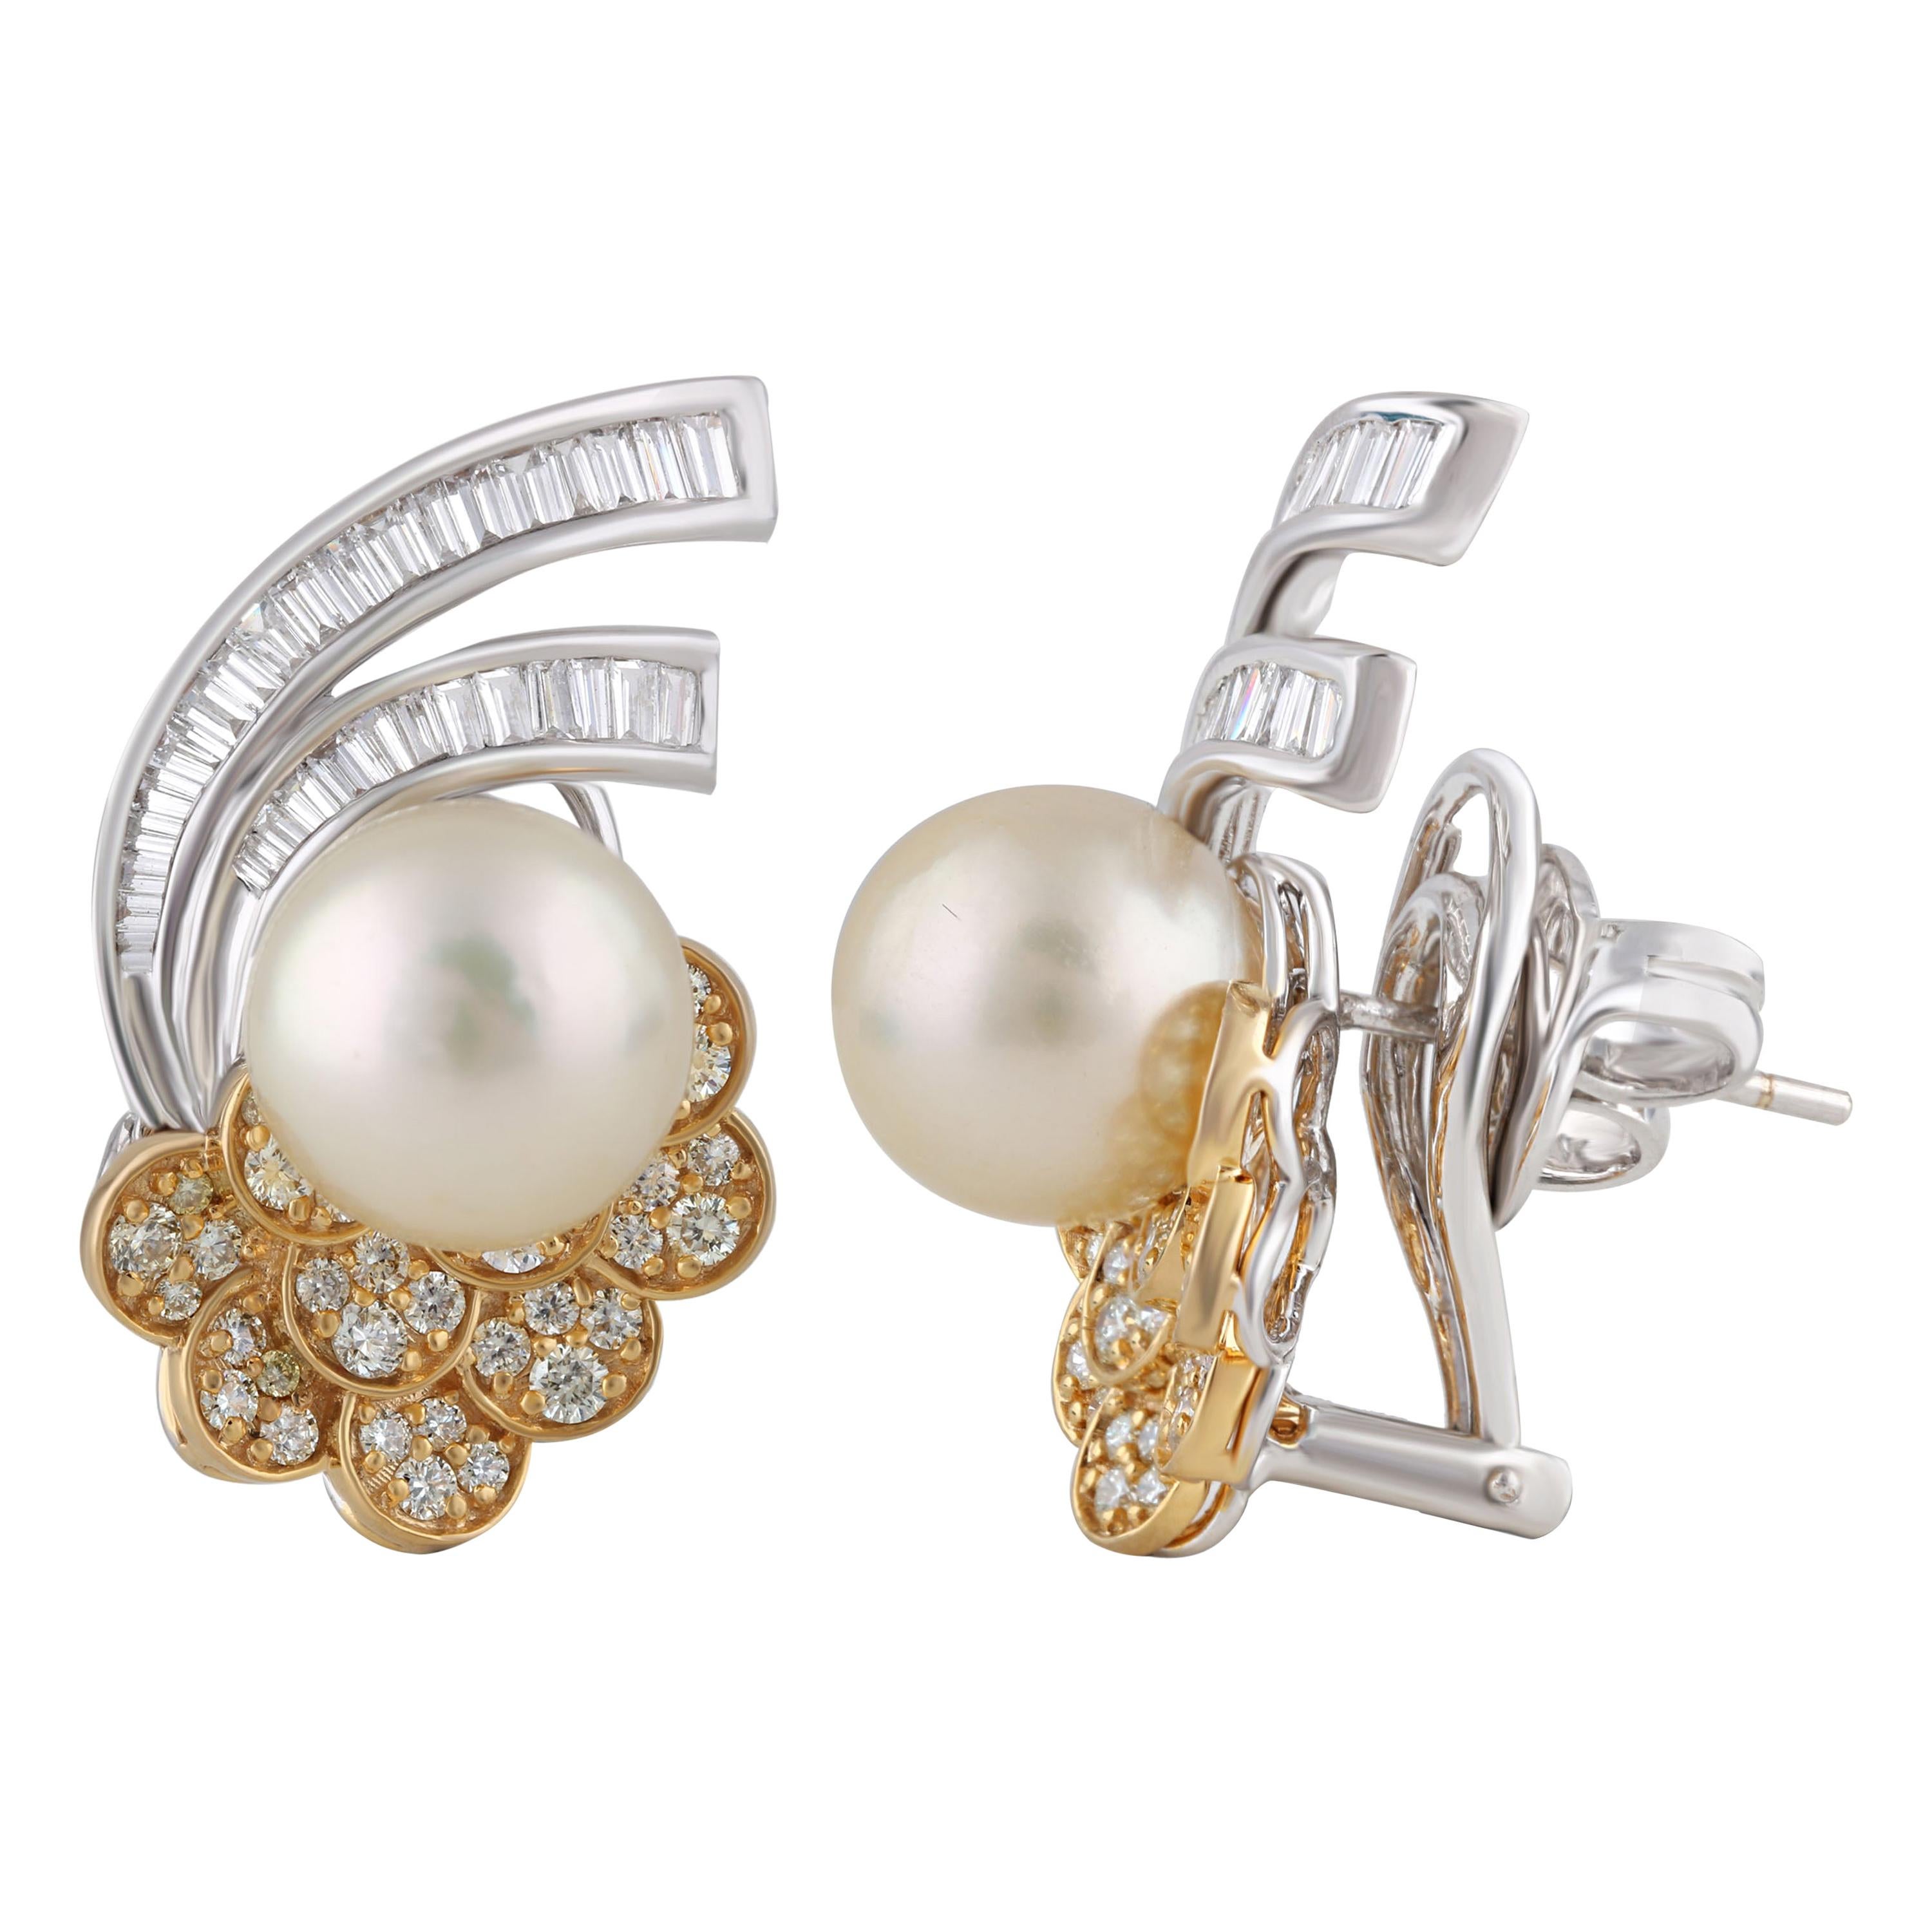 Baguette Cut Studio Rêves Ocean Inspired Diamond and Pearl Stud Earrings in 18 Karat Gold For Sale